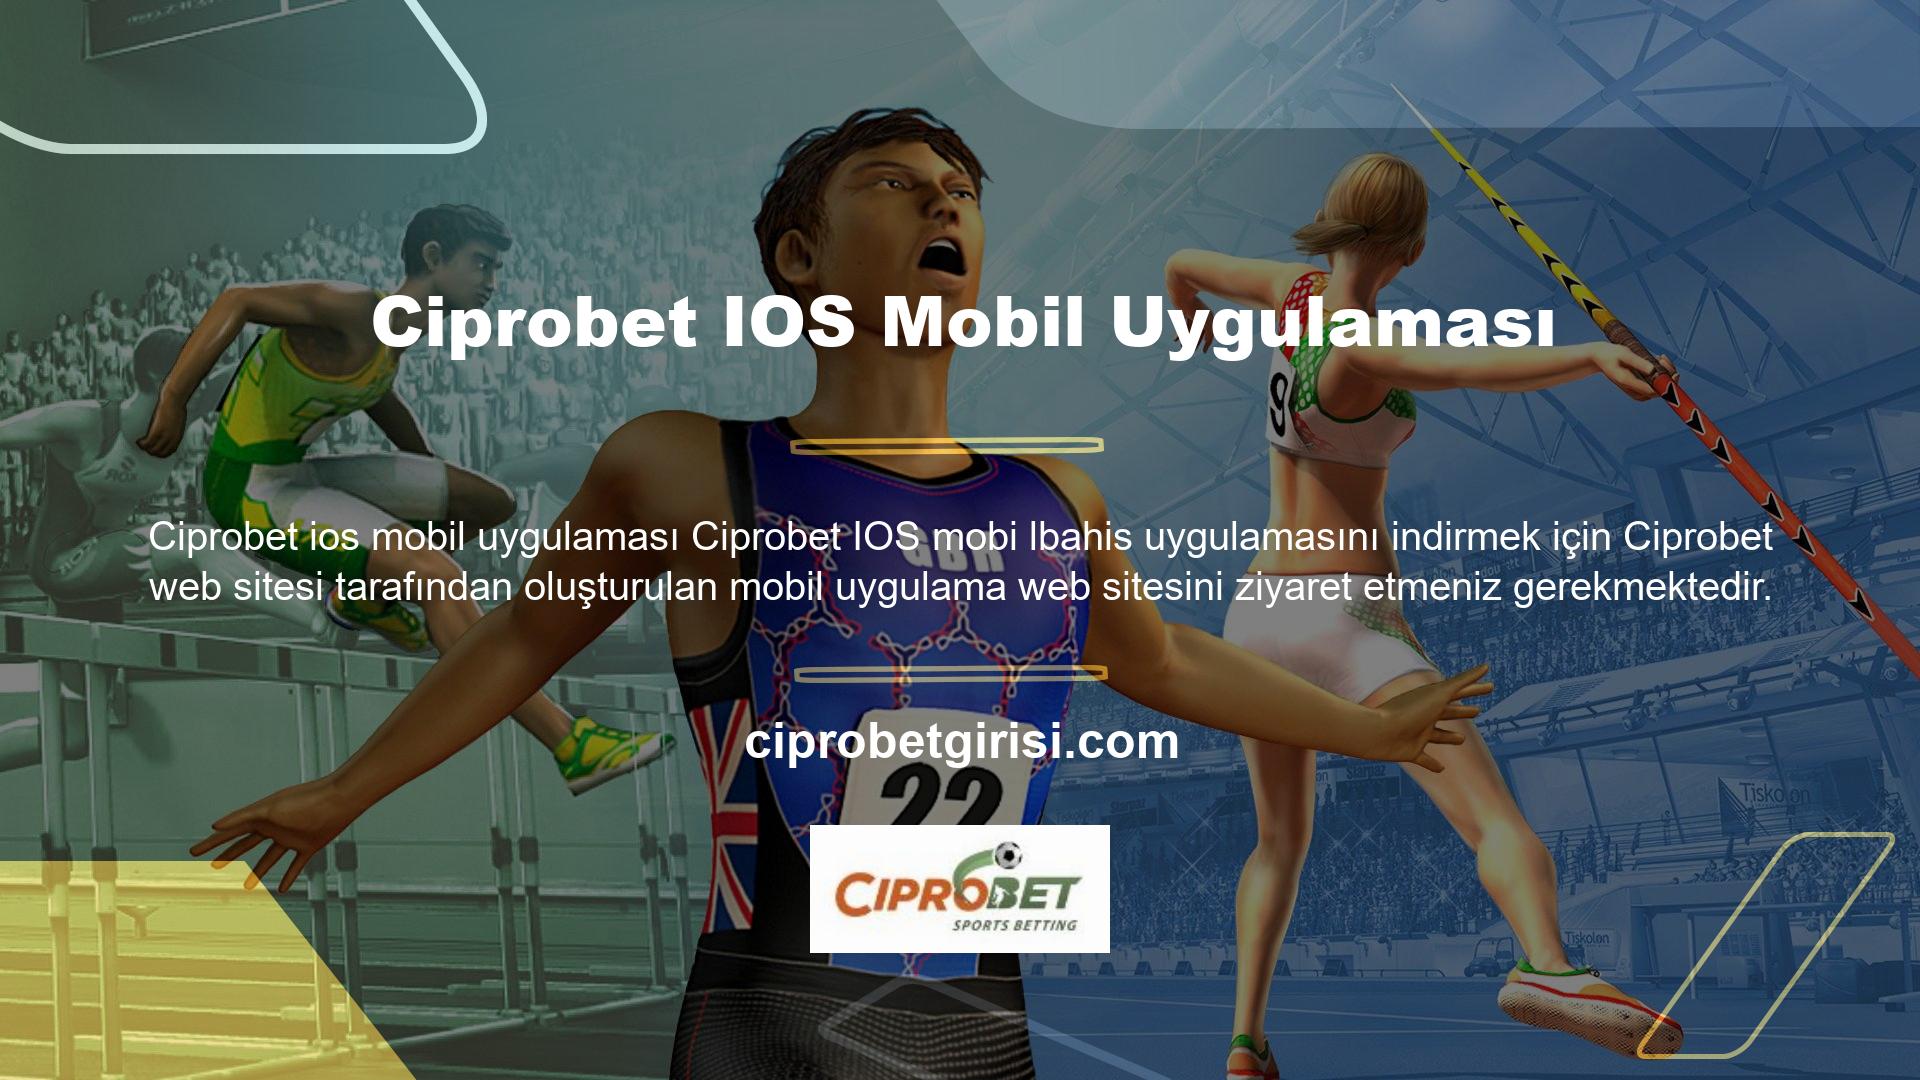 Ciprobet ios mobil uygulaması Ciprobet, tüm mobil cihazlarda mobil uygulama hizmeti sunan az sayıdaki bahis ve casino sitelerinden biridir